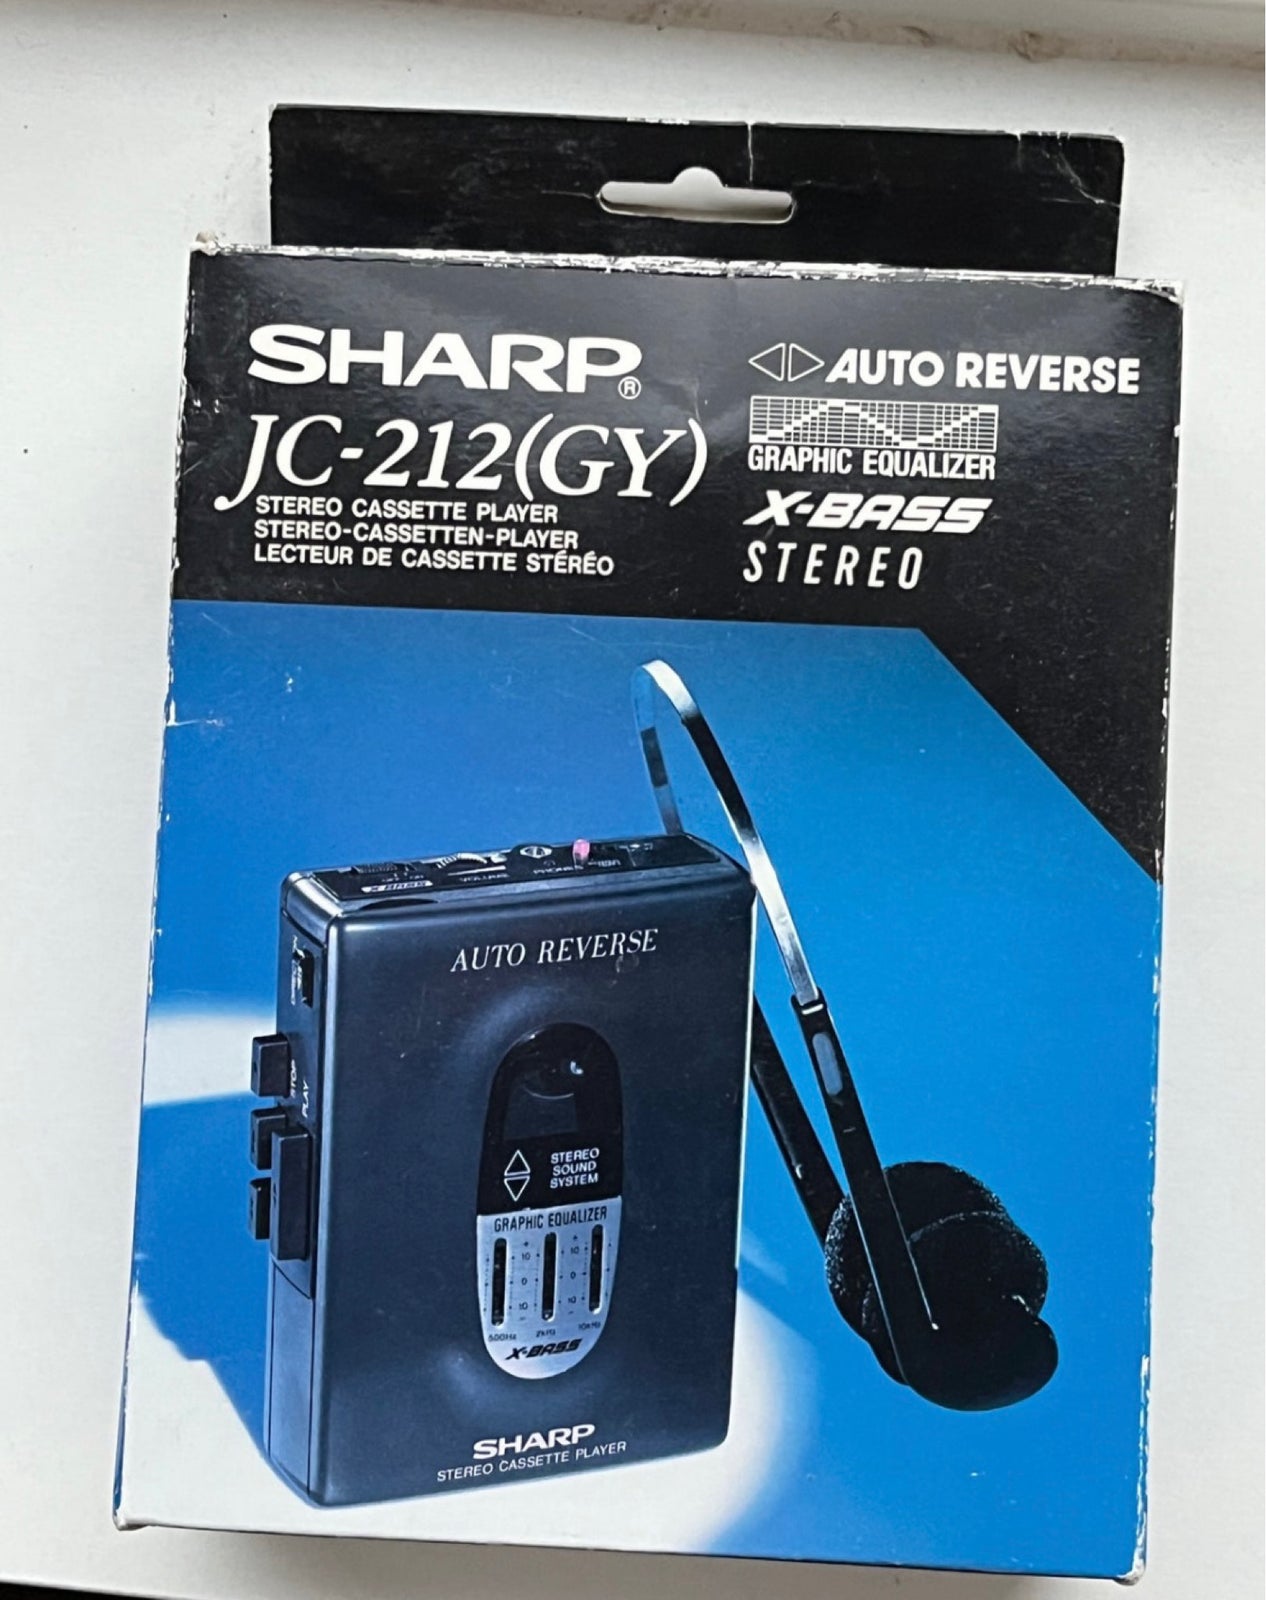 Walkman, Sharp, JC-212